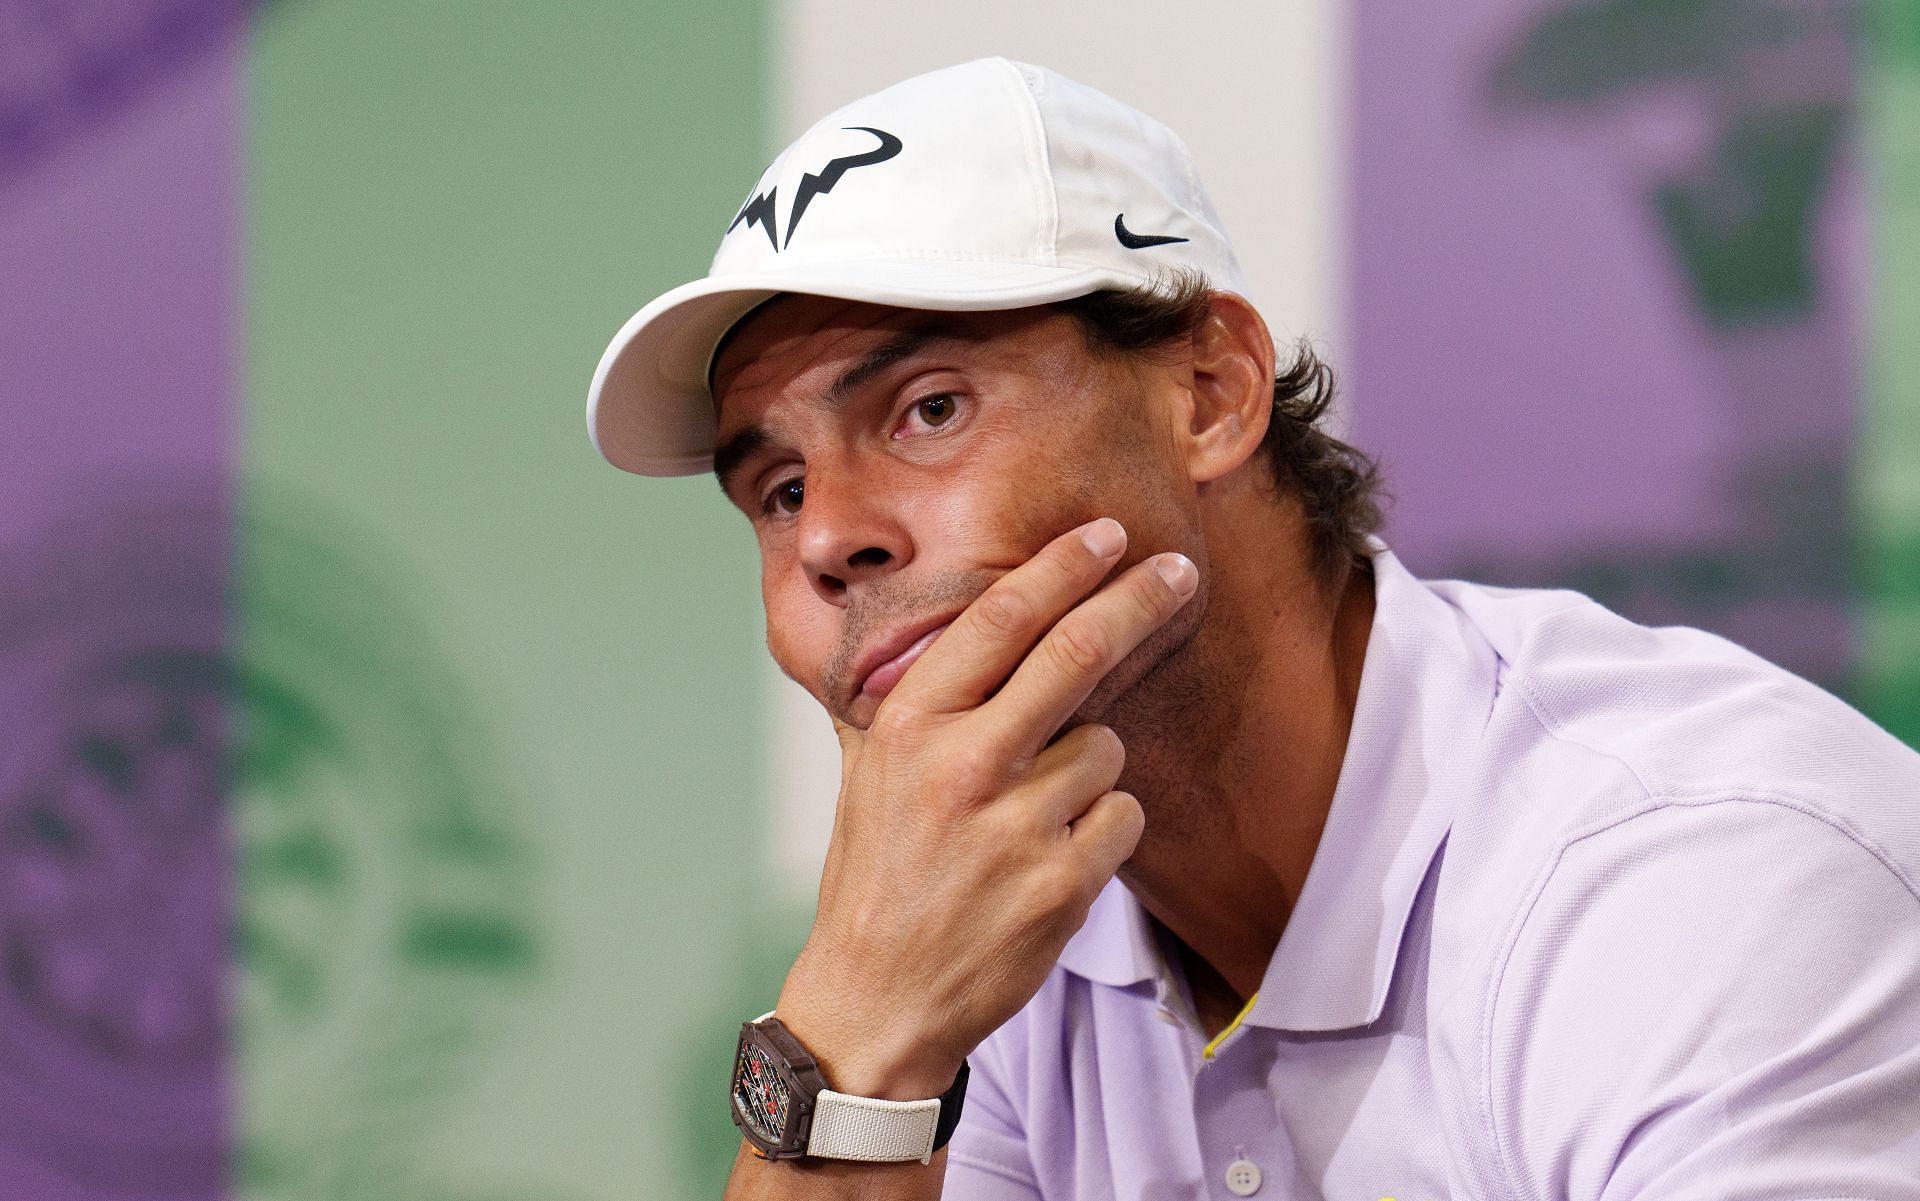 Rafael Nadal at a press conference